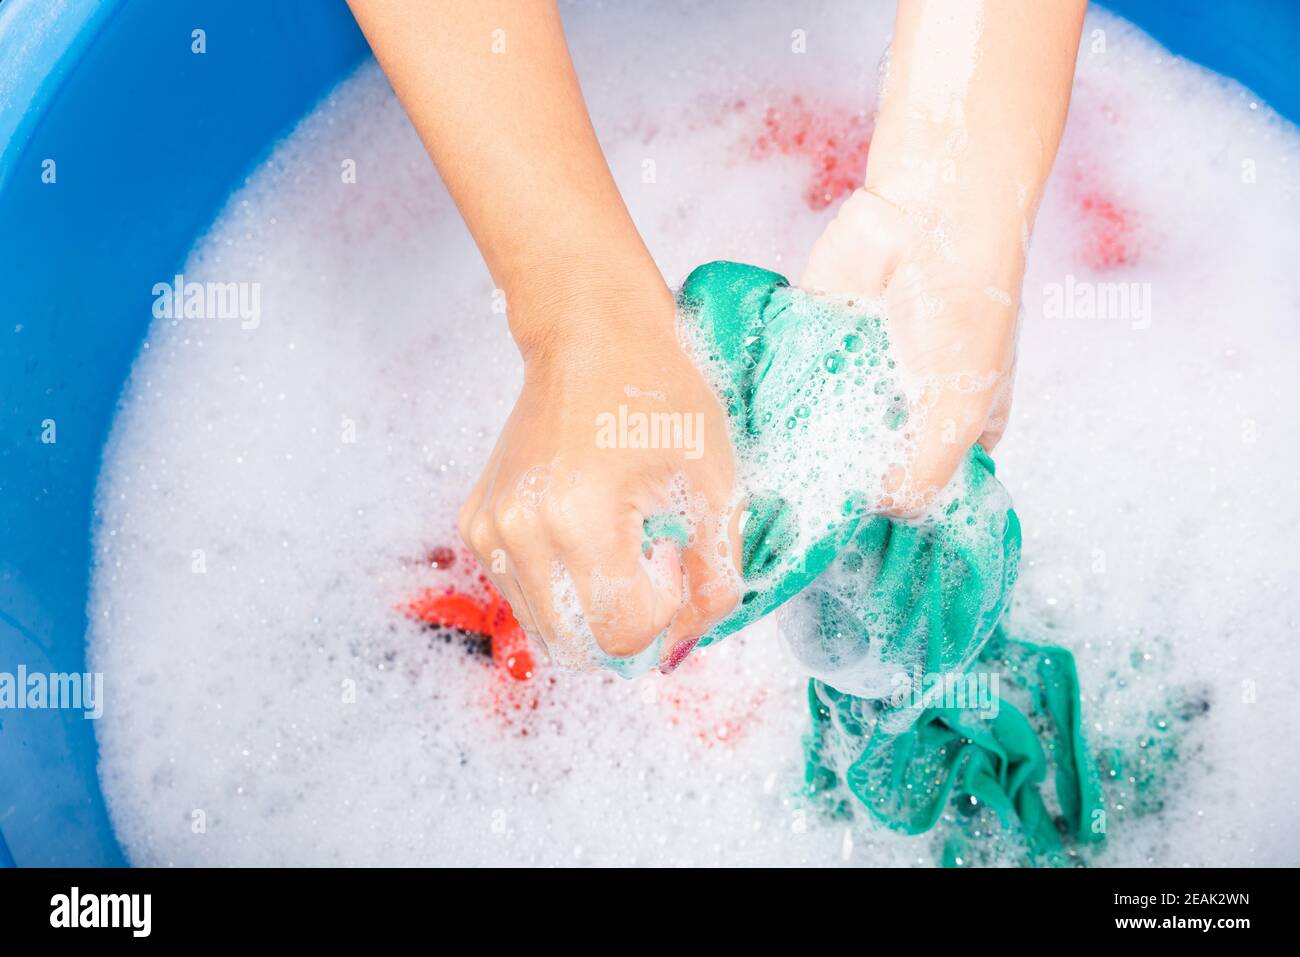 El bebé se baña o se lava en una palangana con espuma y pompas de jabón.